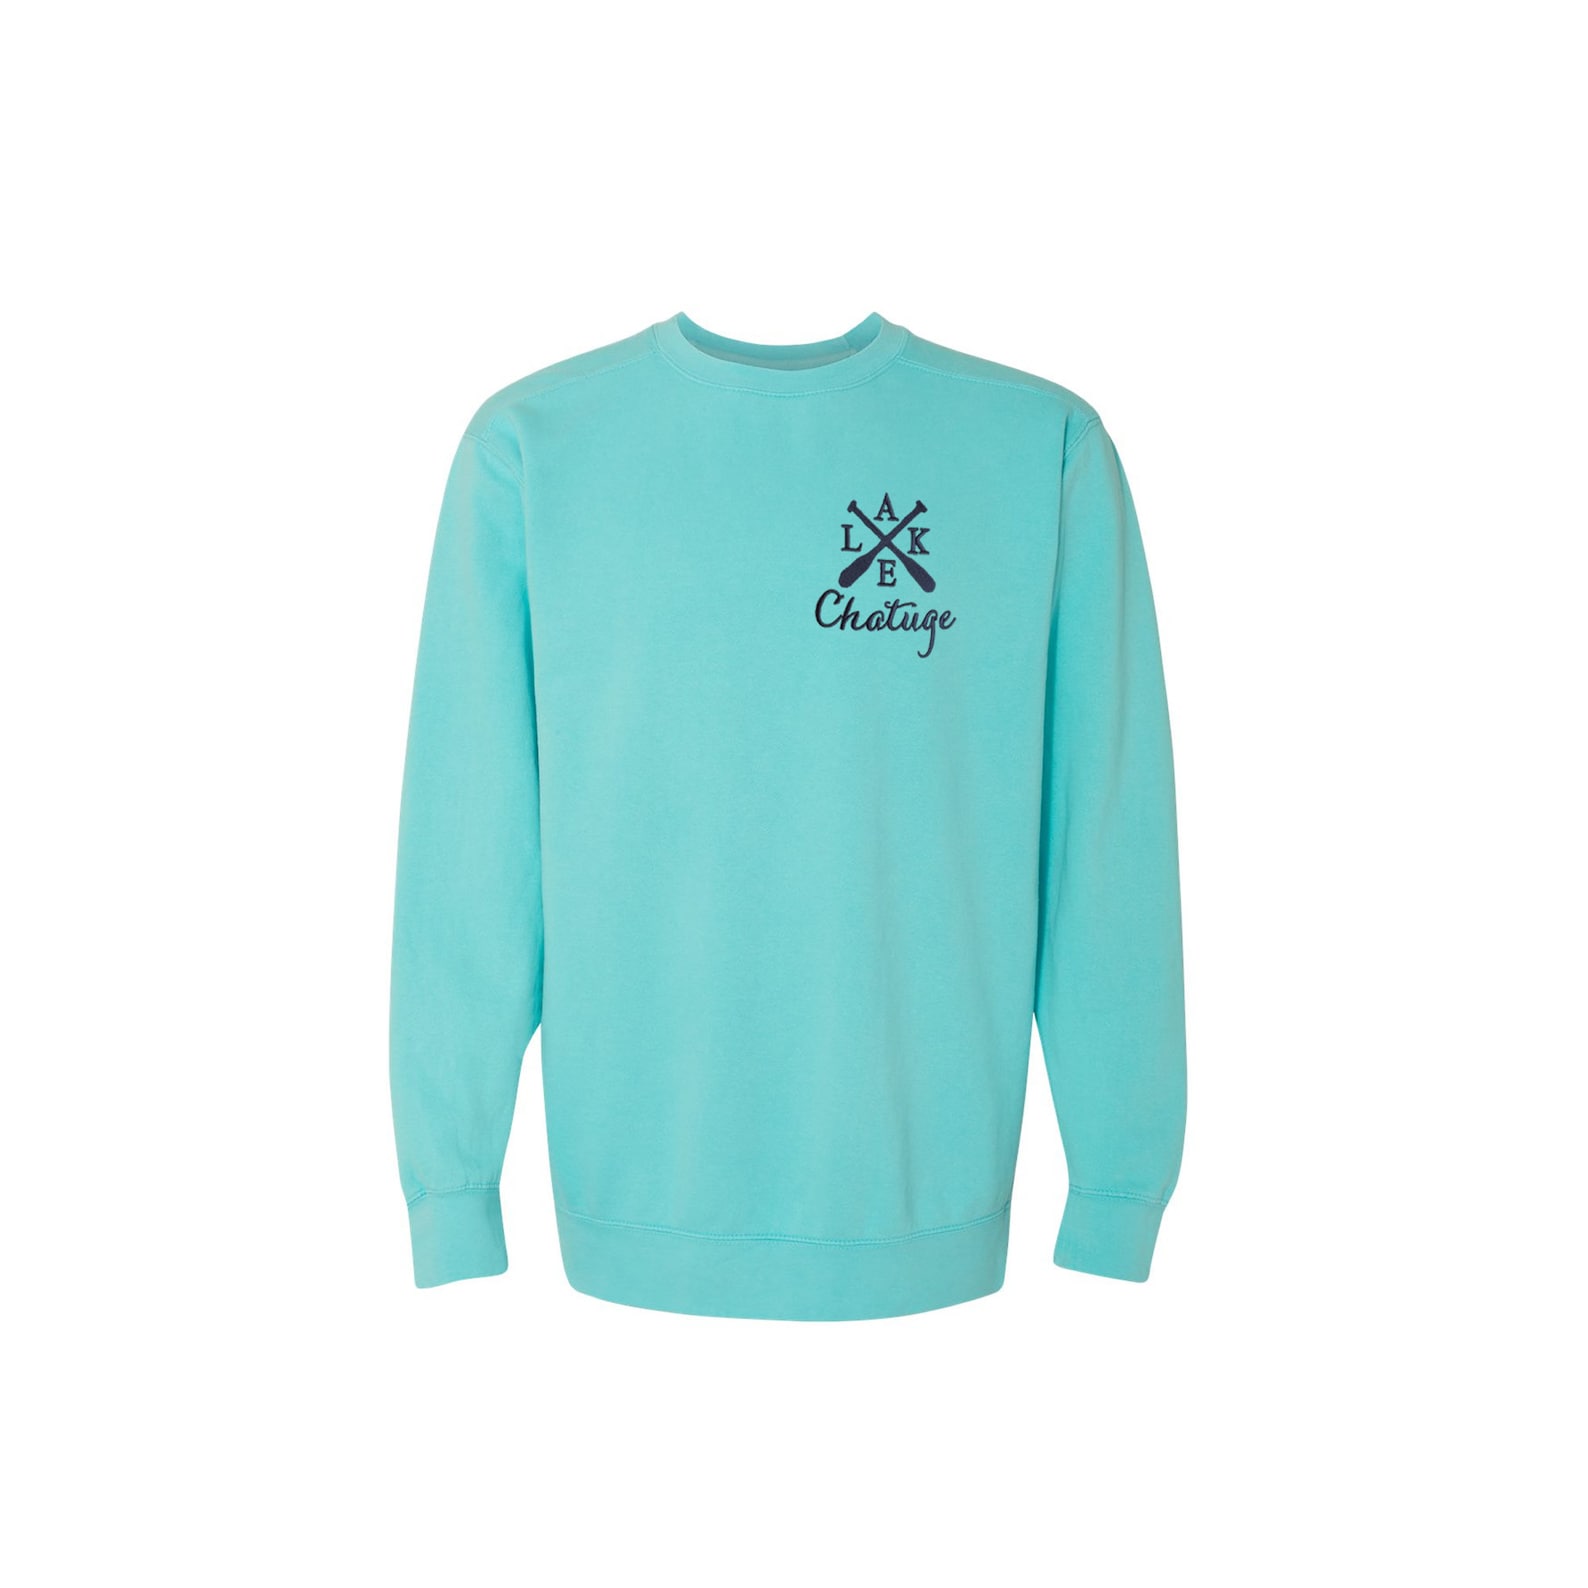 Lake Sweatshirt Comfort Colors Crew Neck Sweatshirt Custom - Etsy